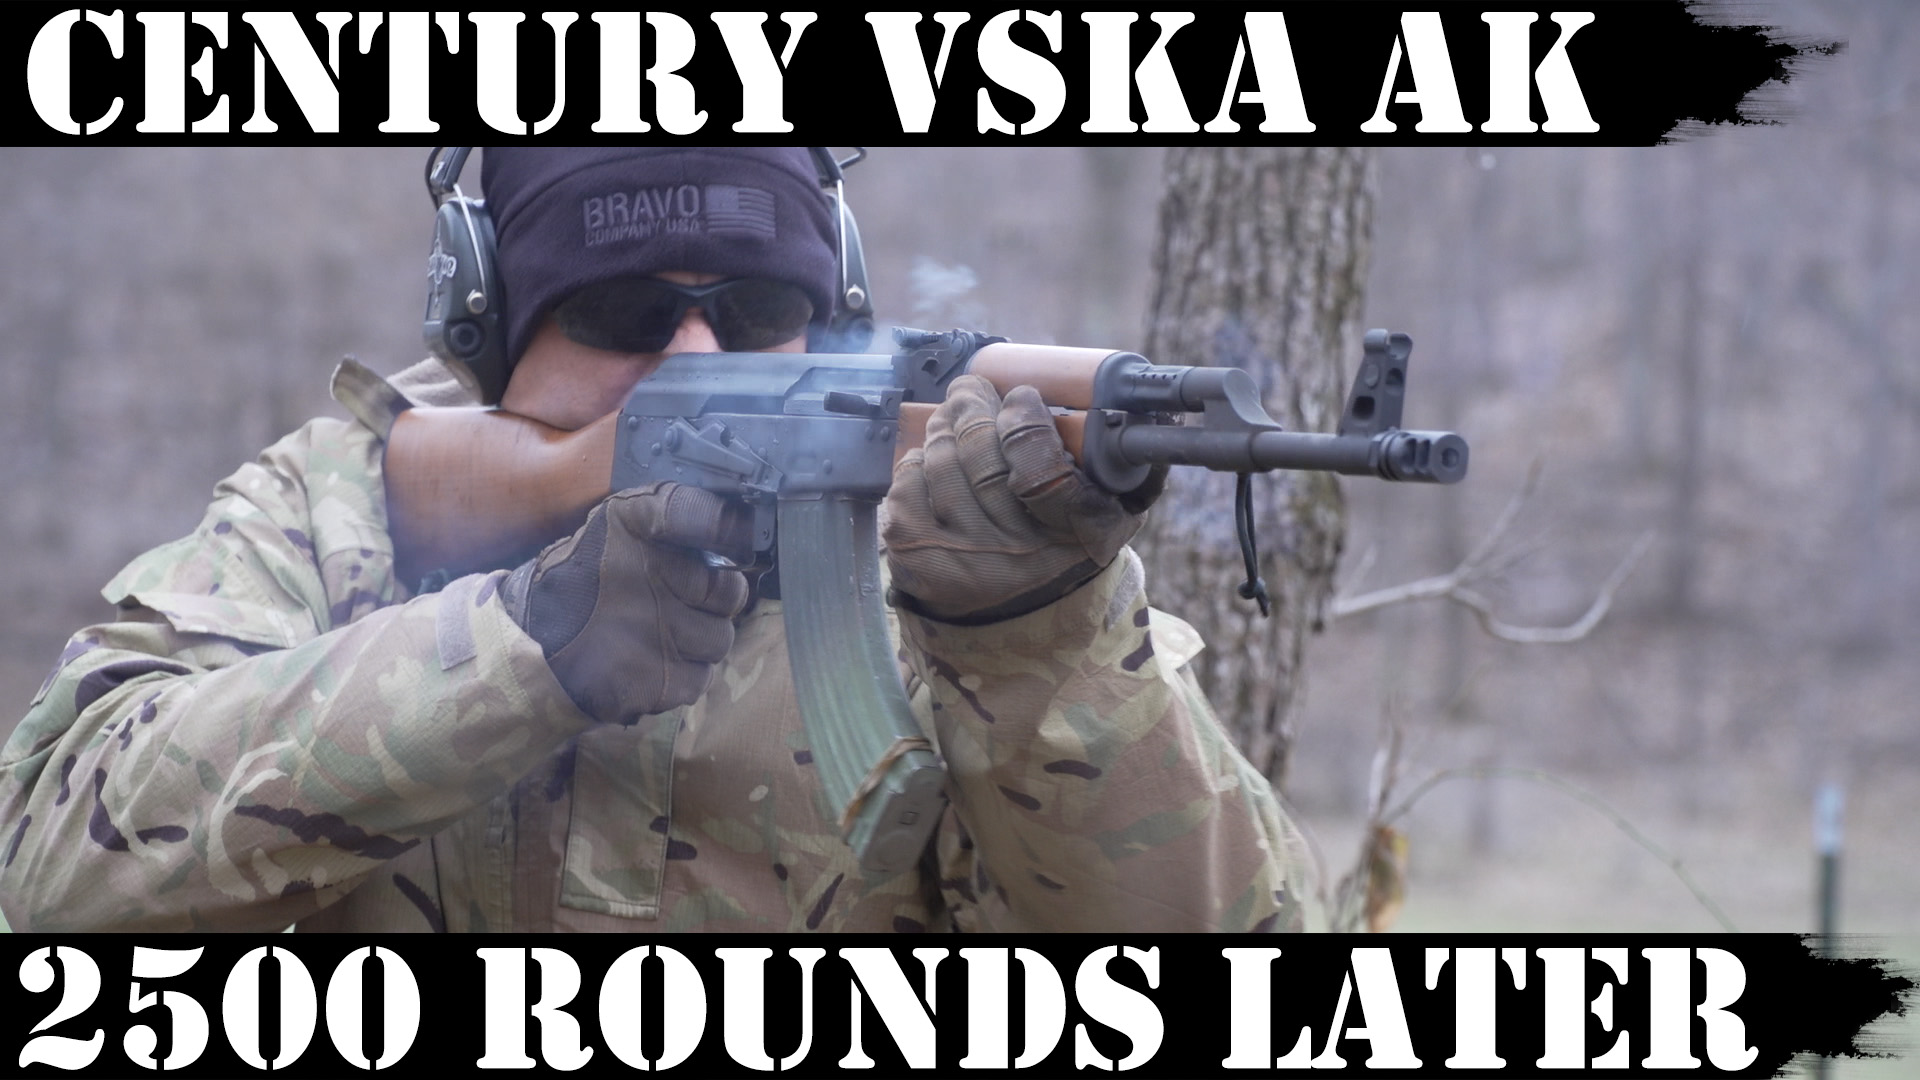 Century VSKA AK: 2,500 Rounds Later